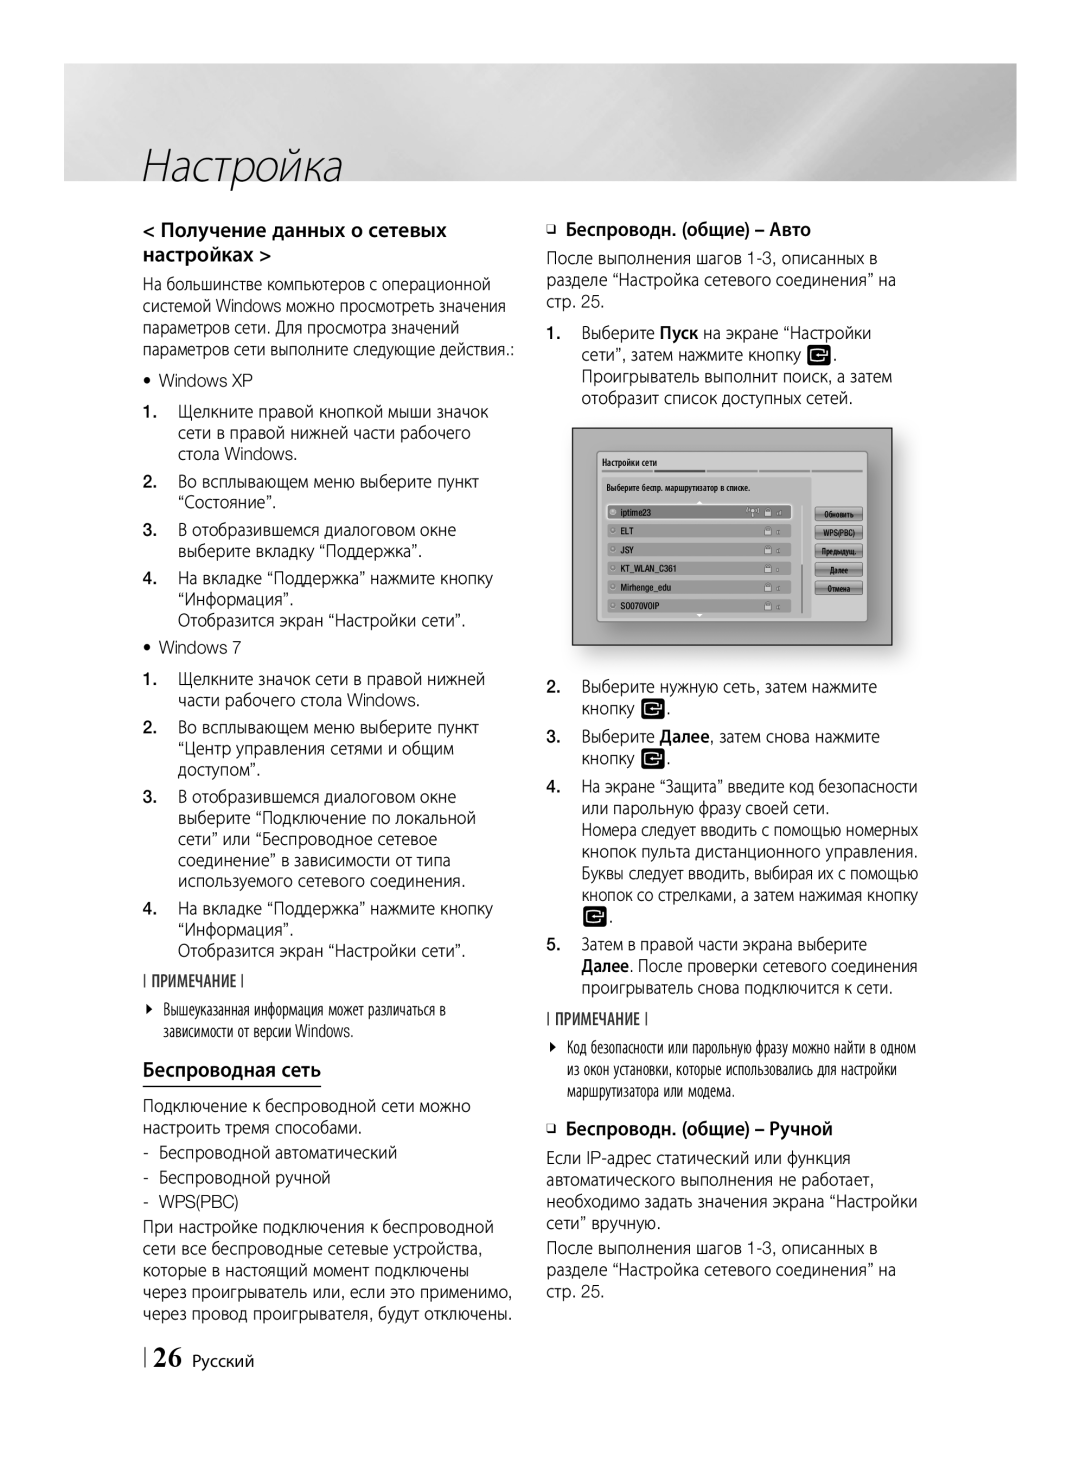 Samsung BD-ES6000/RU, BD-ES6000E/RU manual Получение данных о сетевых настройках, Беспроводная сеть, Wpspbc, 26 Русский 